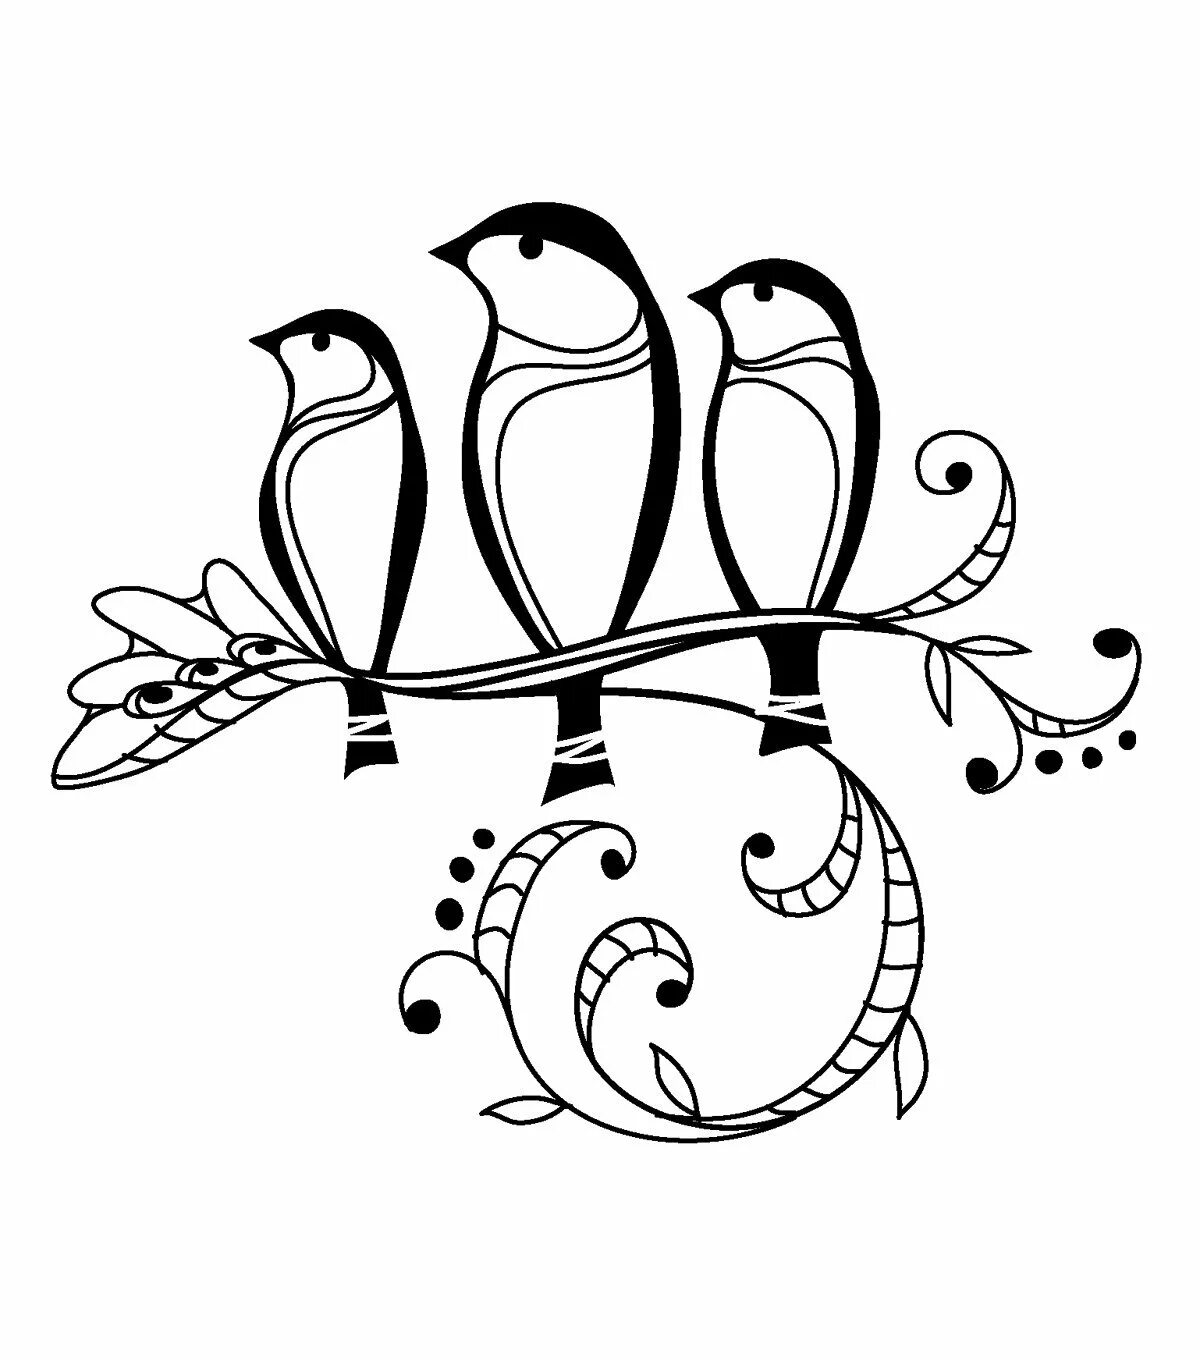 Вензель птичка. Узоры с птичками. Птица эскиз. Схематичное изображение птицы.